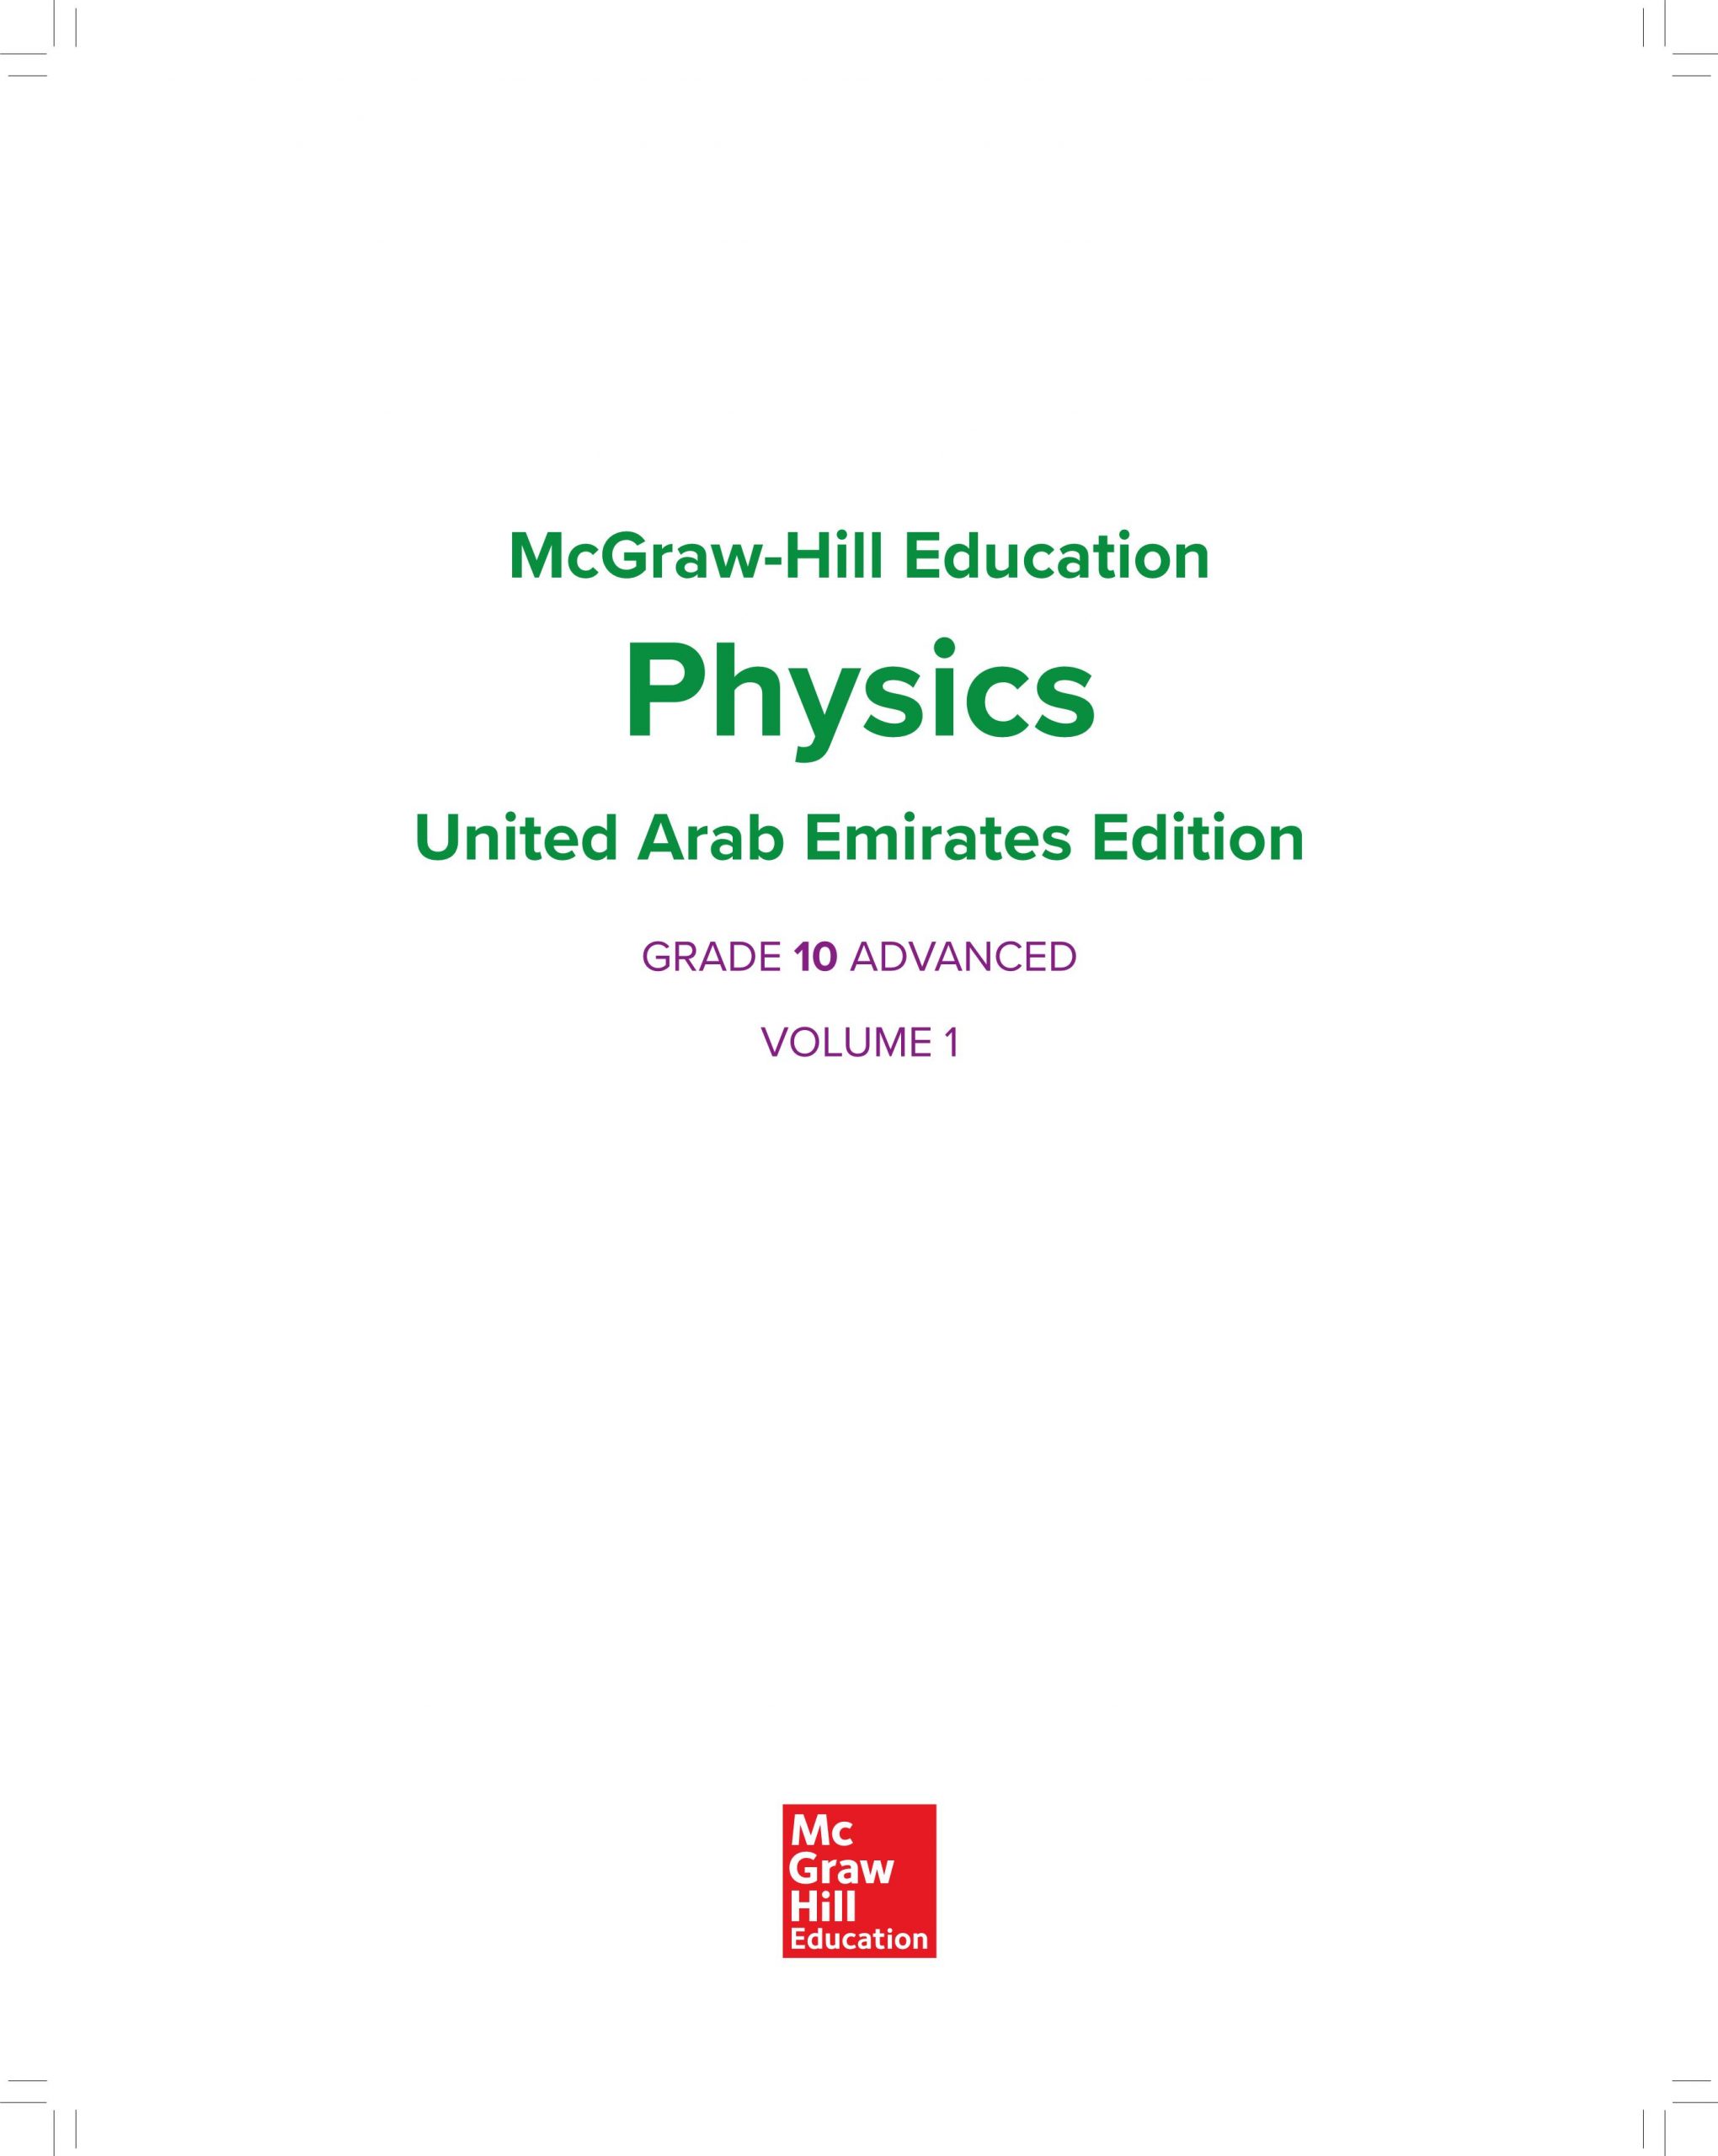 كتاب الطالب بالانجليزي الفصل الدراسي الاول للصف العاشر مادة الفيزياء